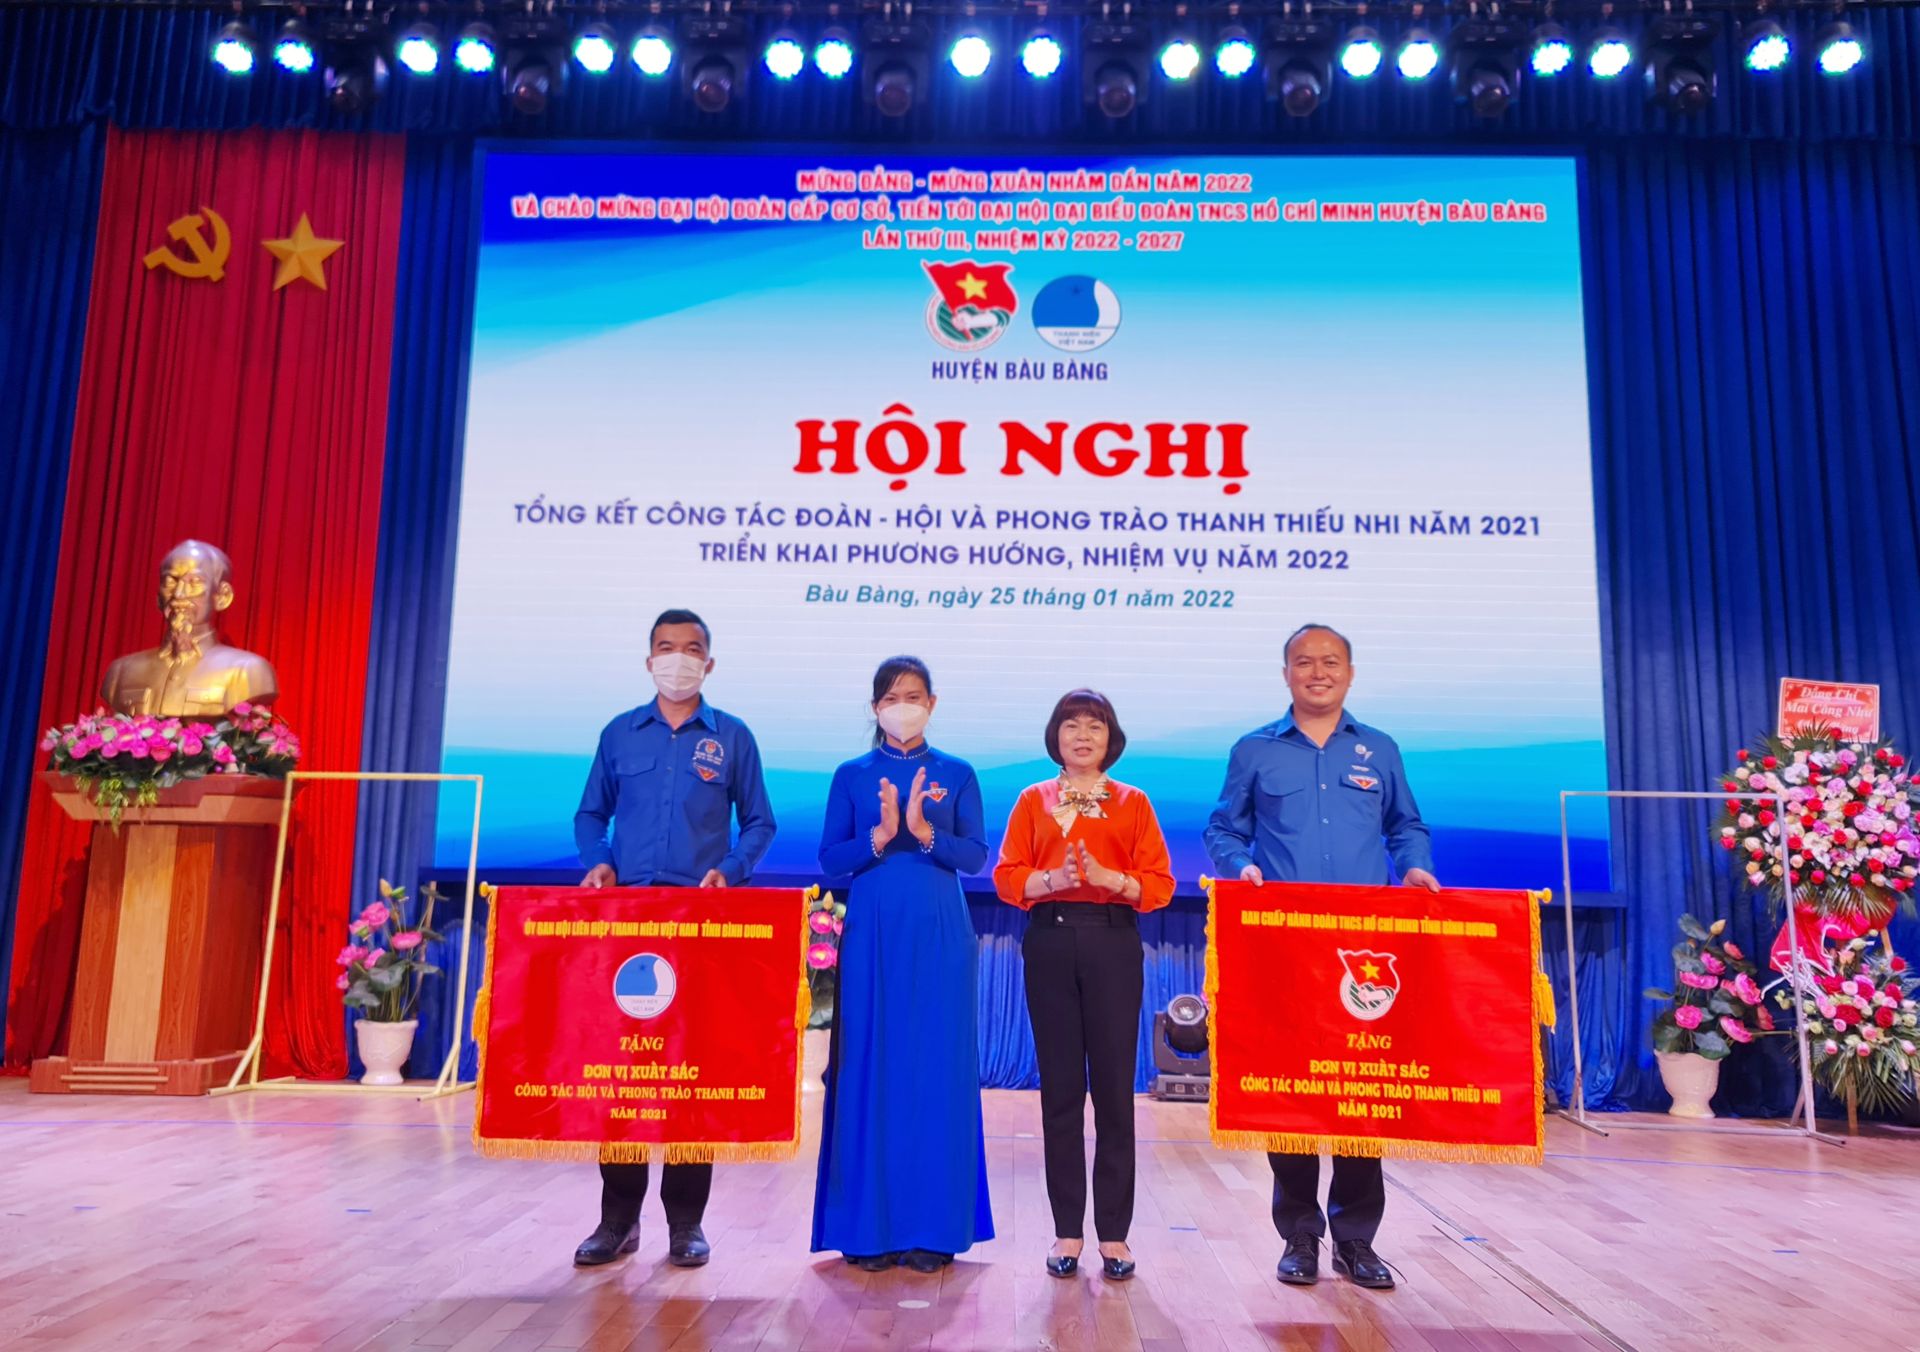 Đoàn TNCS Hồ Chí Minh huyện Bàu Bàng - 3 năm liên tiếp nhận cờ thi đua xuất sắc